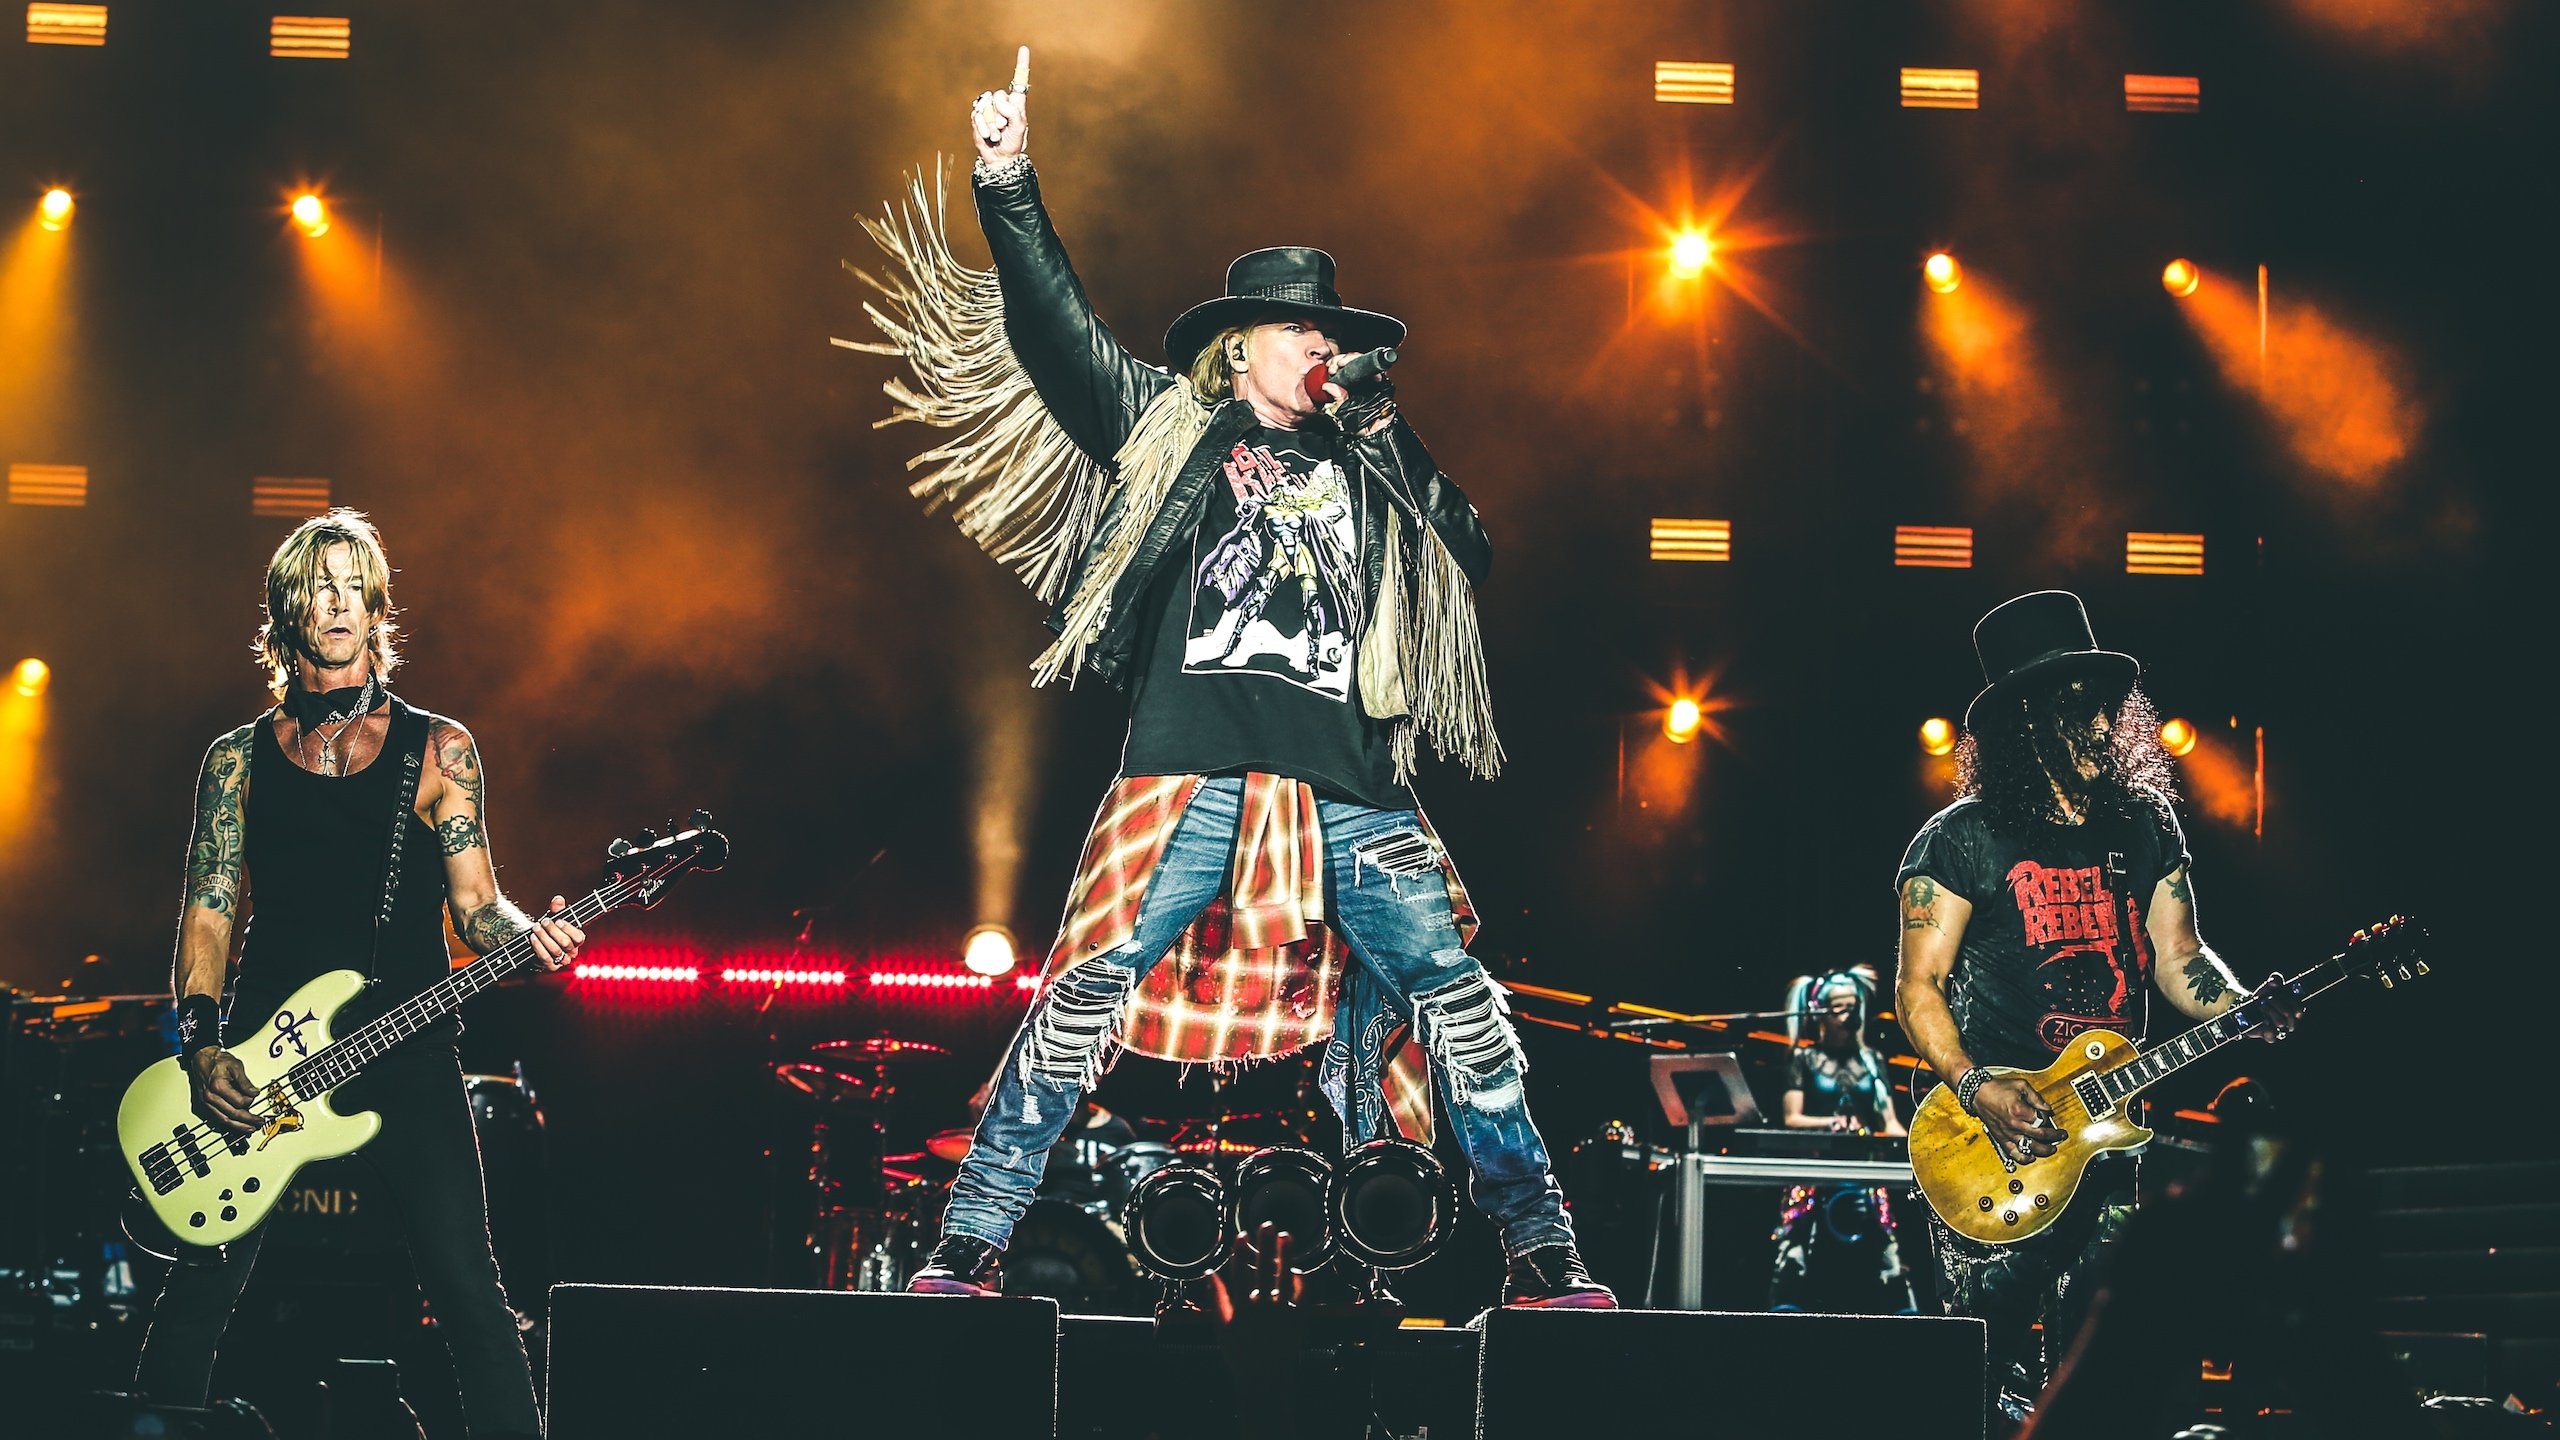 Guns N Roses, Evidence, New album rumors, 2560x1440 HD Desktop